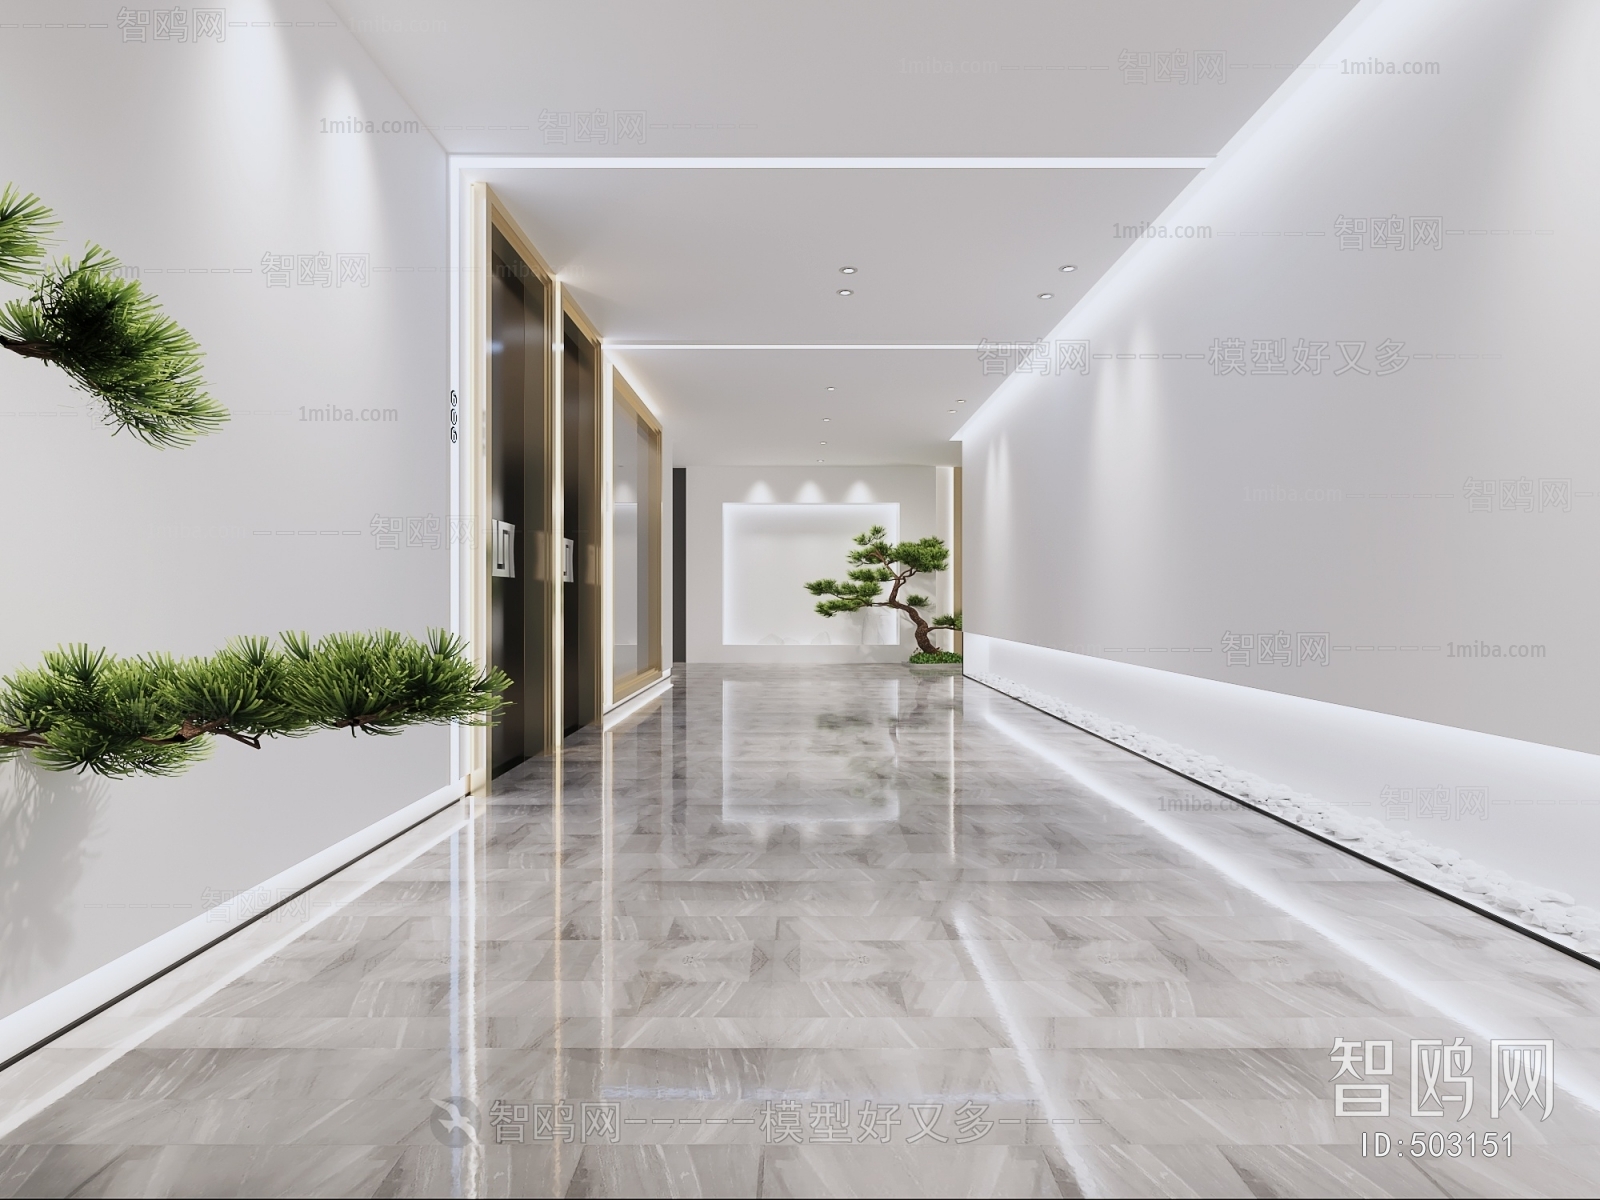 走廊地砖铺贴效果图大全2015图片 – 设计本装修效果图